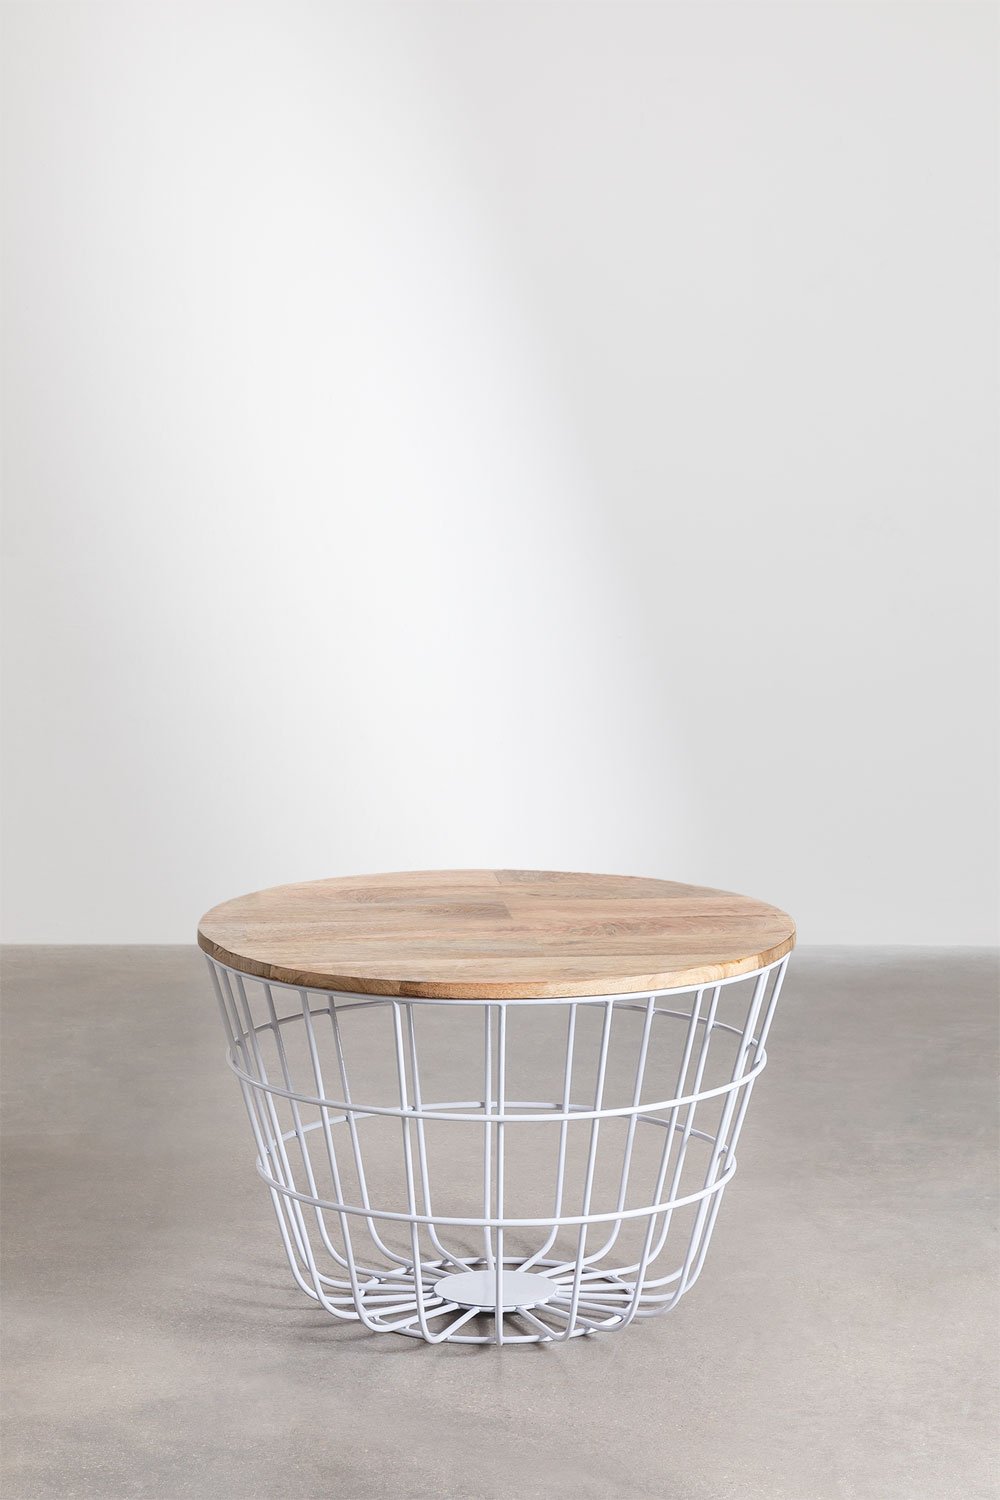 Table basse ronde en manguier et acier (Ø62 cm) Ket, image de la galerie 1